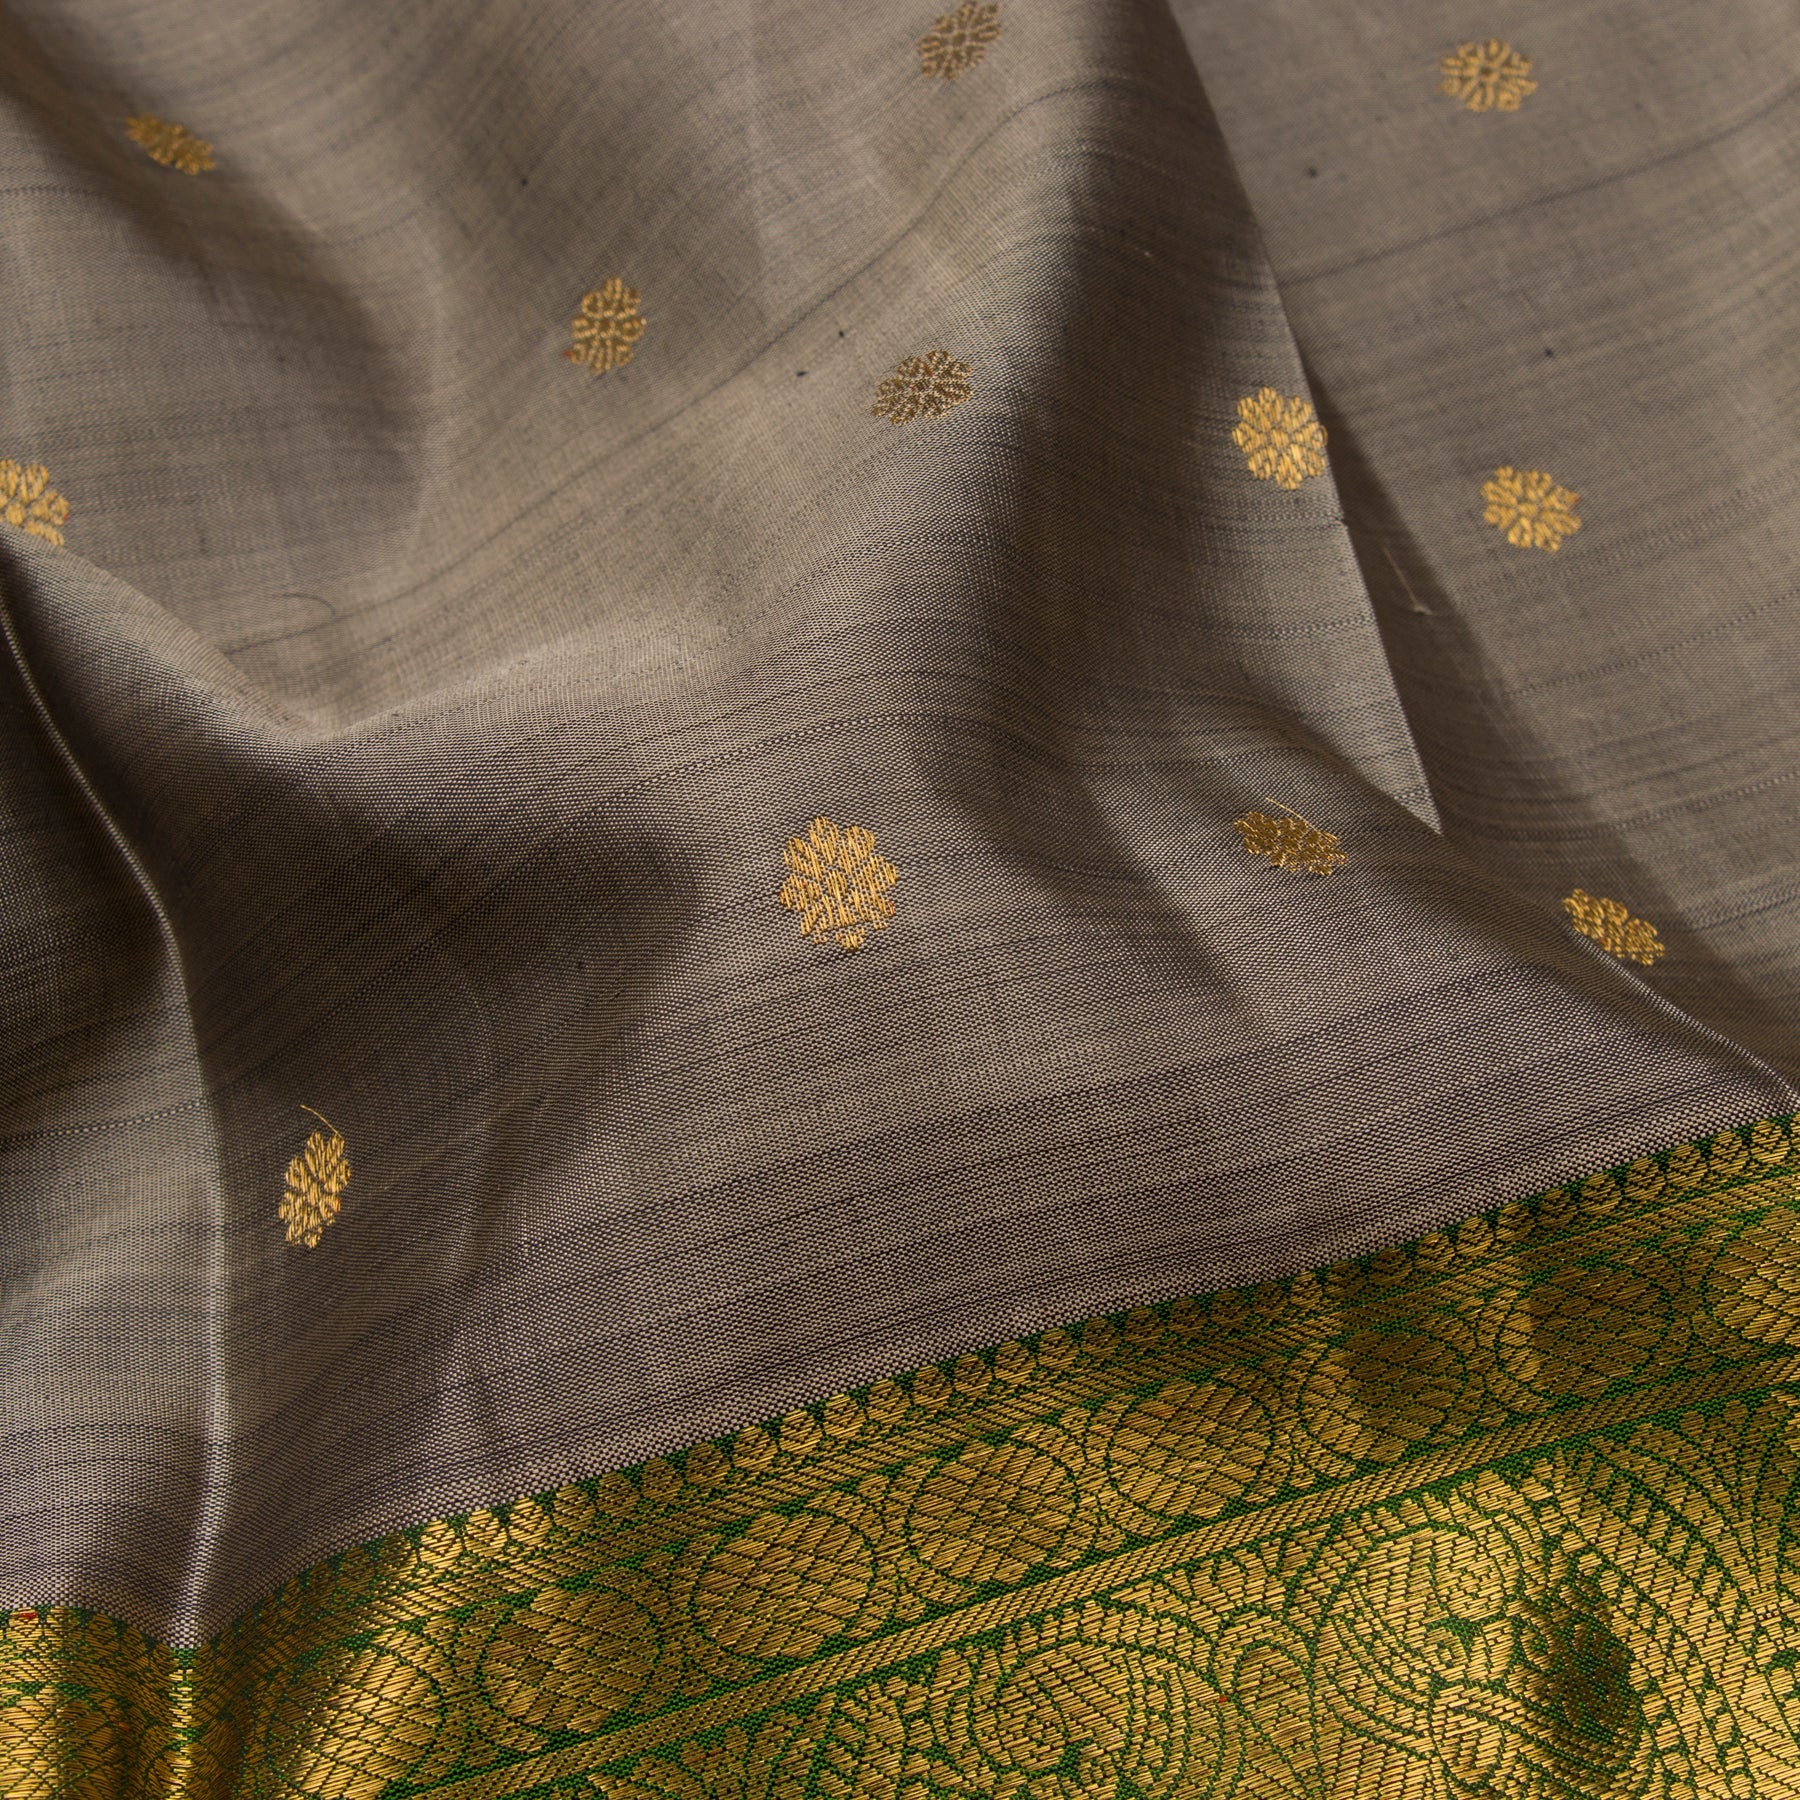 Kanakavalli Kanjivaram Silk Sari 22-110-HS001-12568 - Fabric View